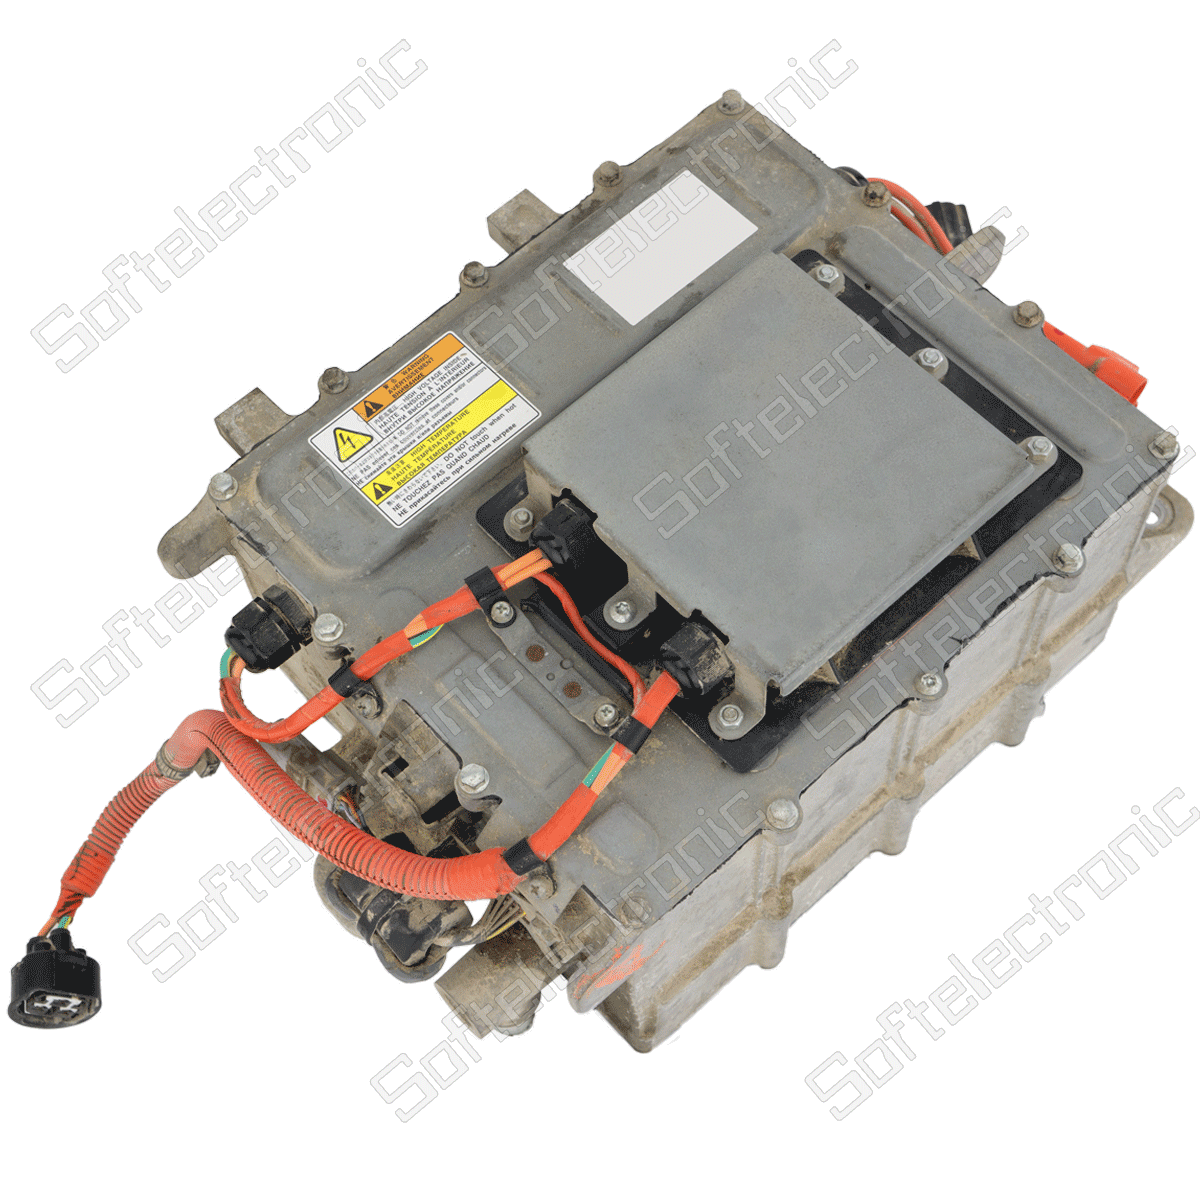 Repair of charging module for electric car Peugeot ION